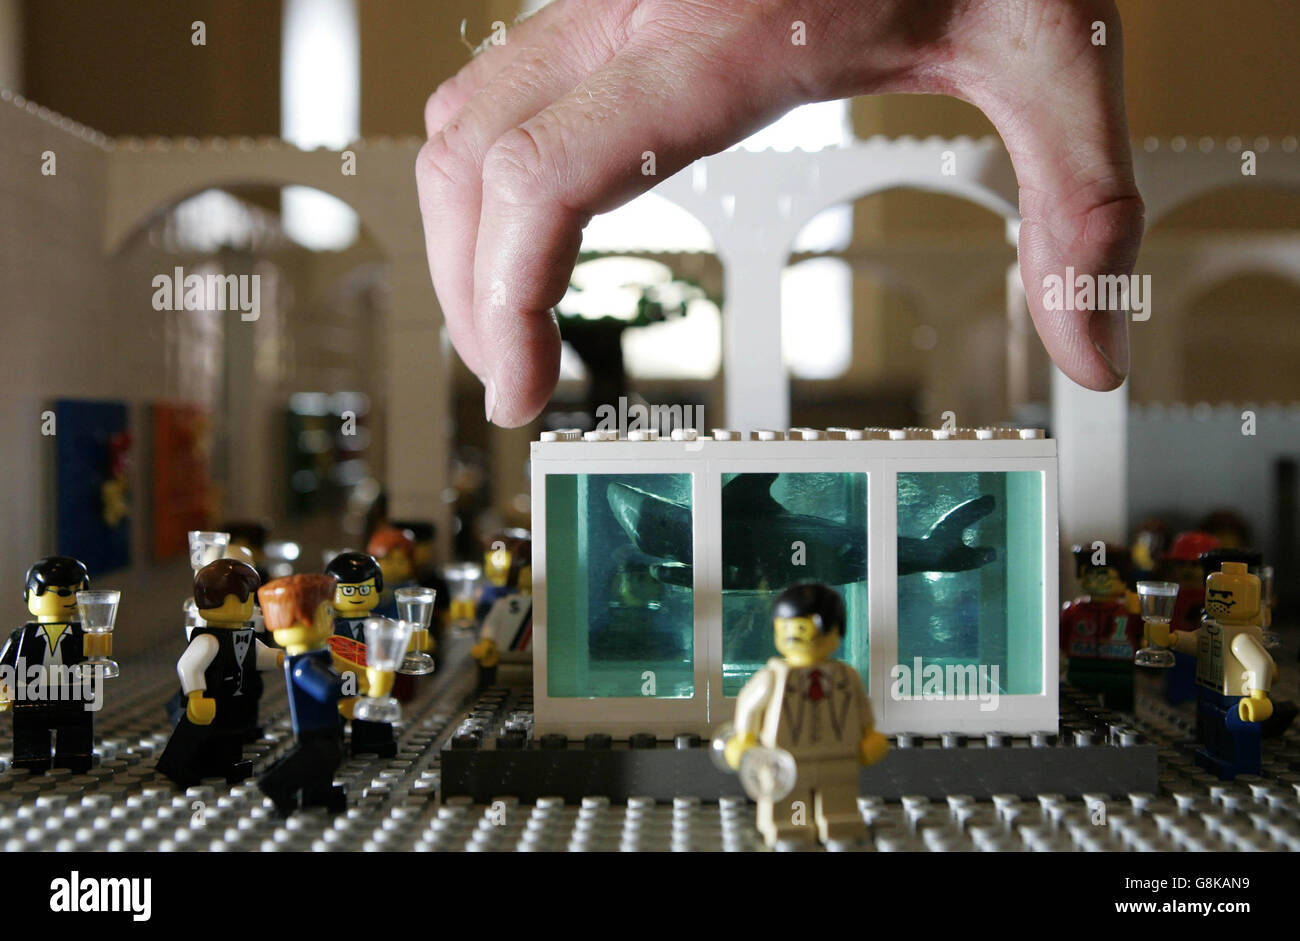 Los toques finales se hacen a una réplica en Lego del tanque de Tiburón de  Damien Hirst como parte de una exposición "Nación más loca del arte" hecha  enteramente de Lego por